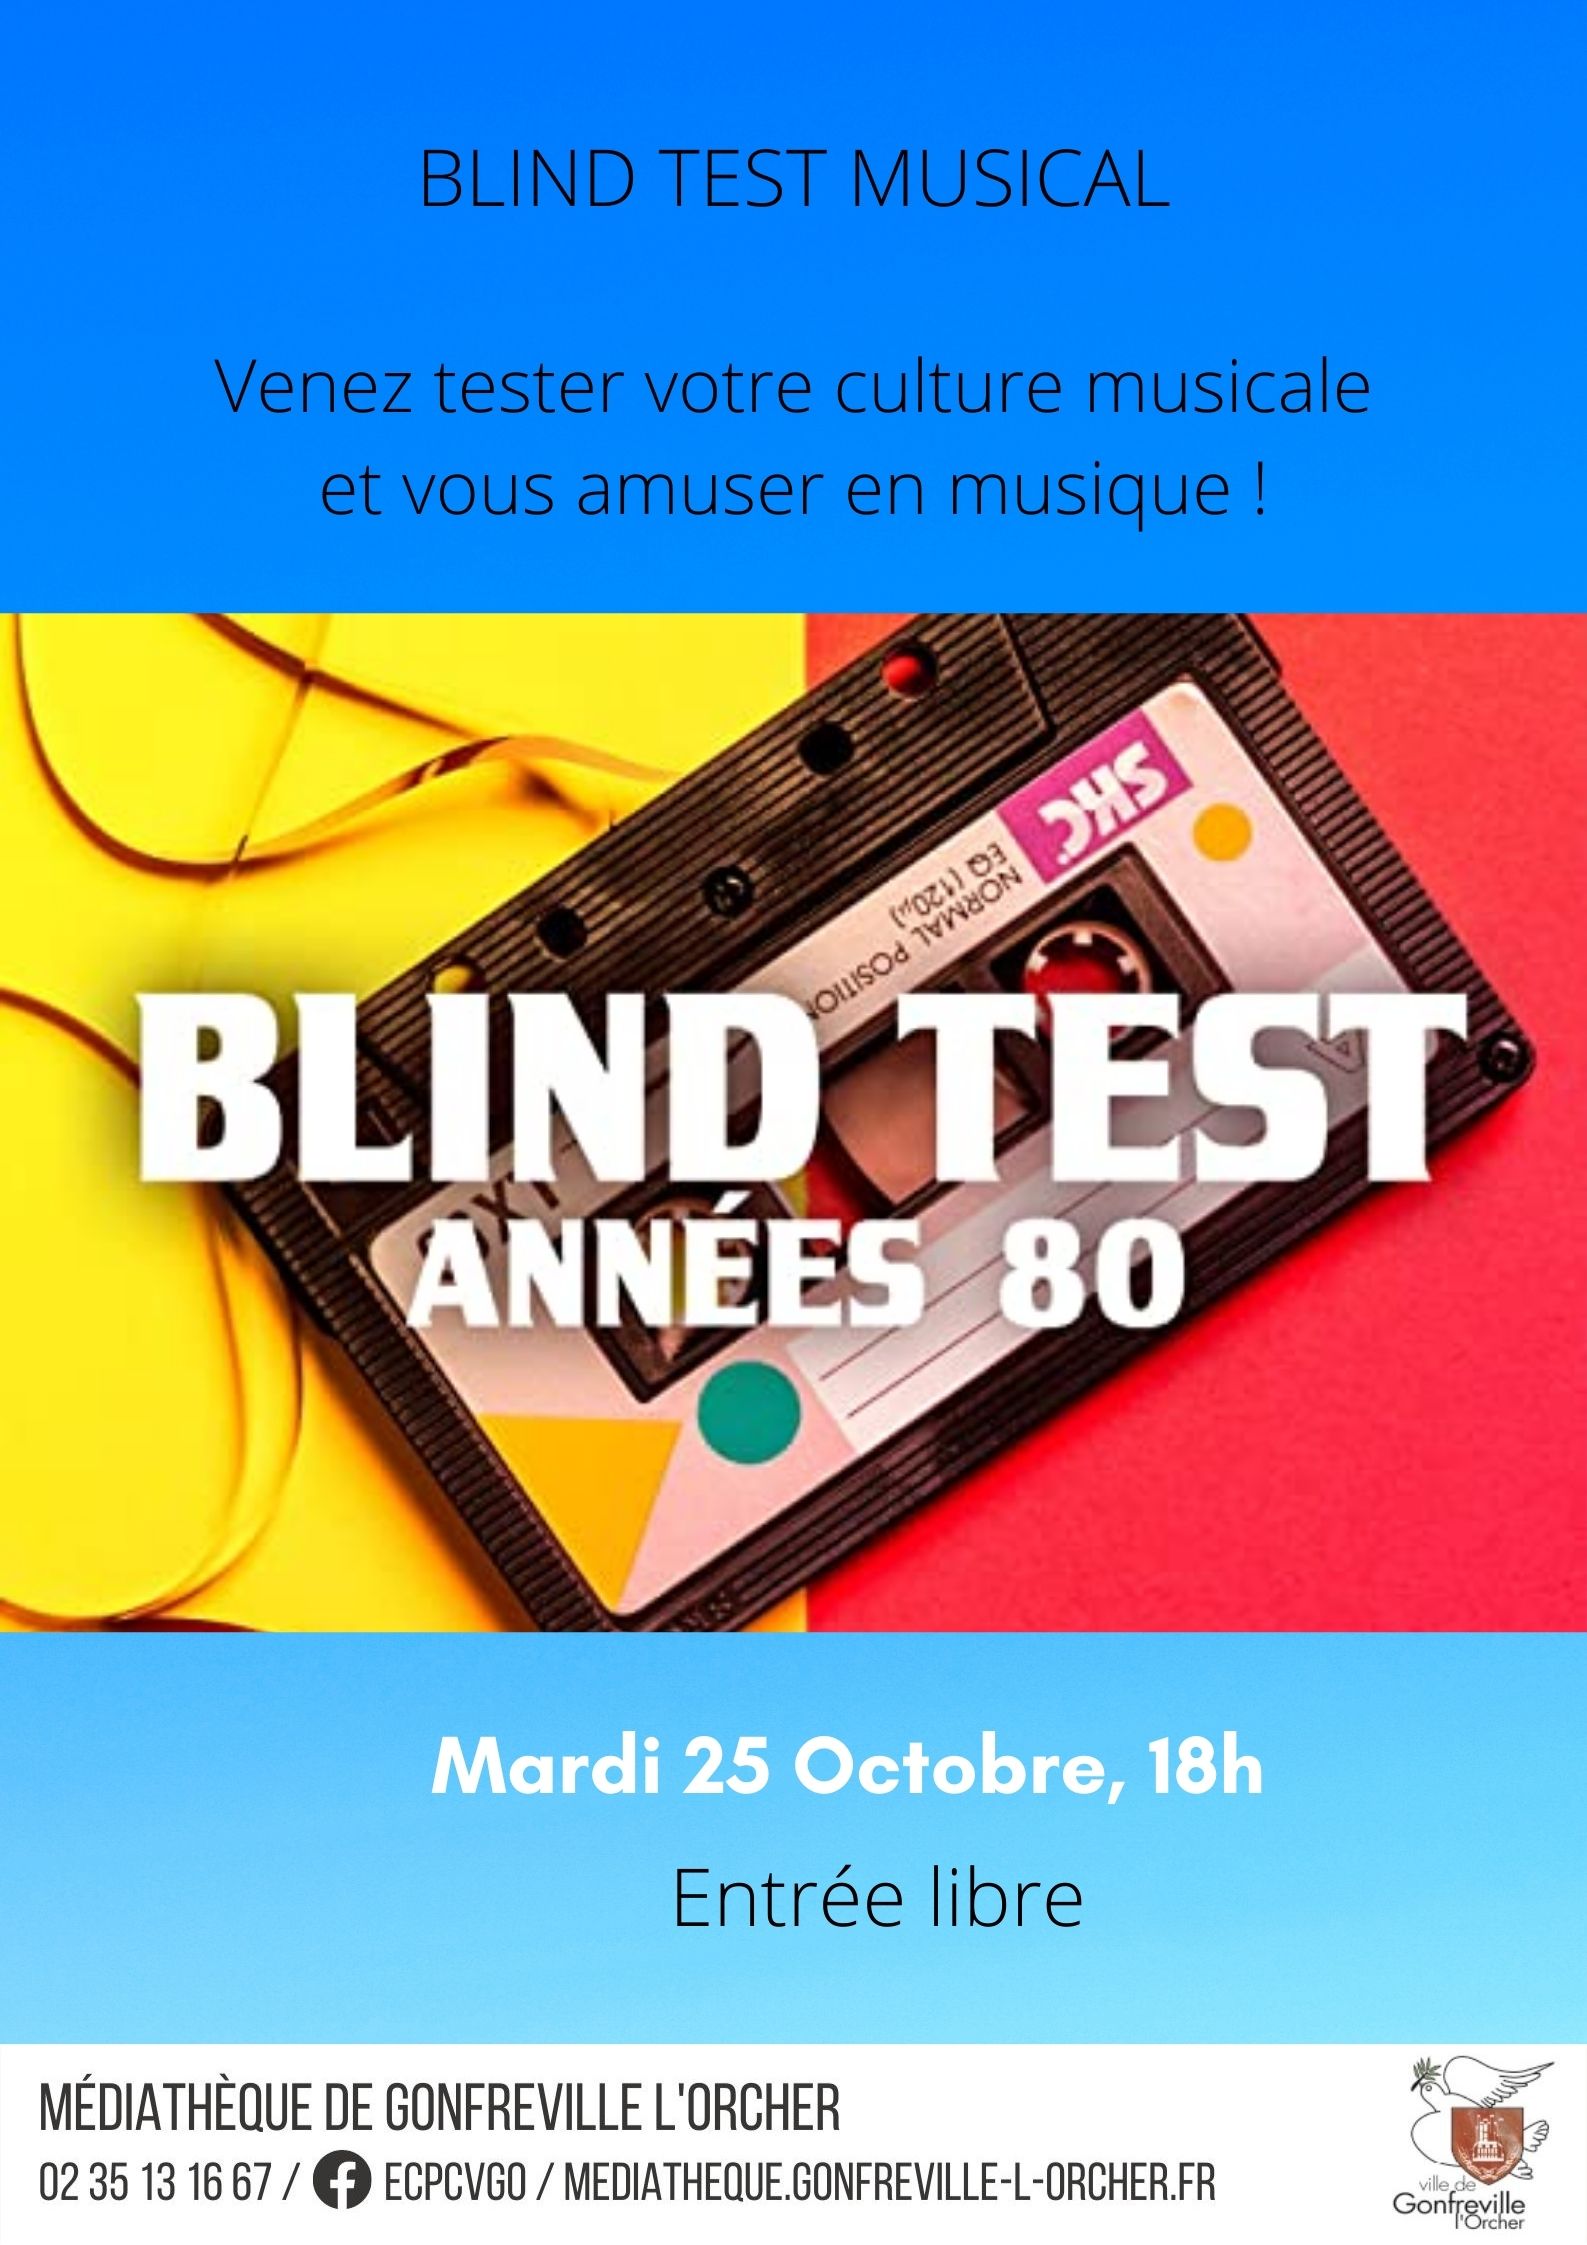 Blind test octobre